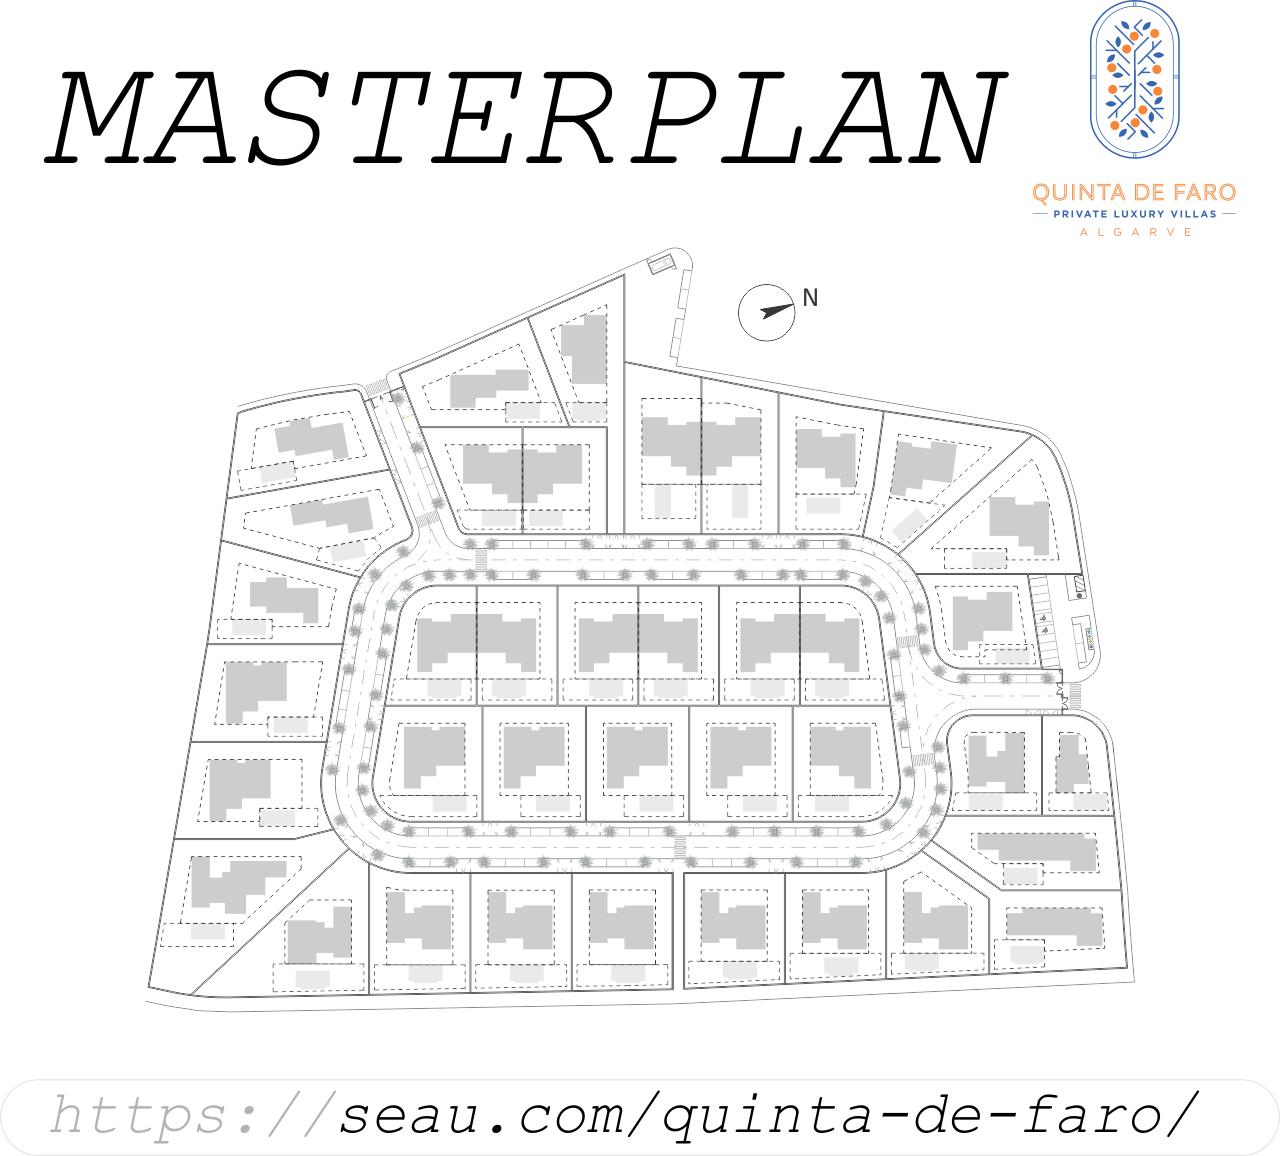 Quinta de Faro-Masterplan. Um mehr über die Bereiche der verschiedenen Grundstücke und die verschiedenen Villentypen zu erfahren, klicken Sie hier